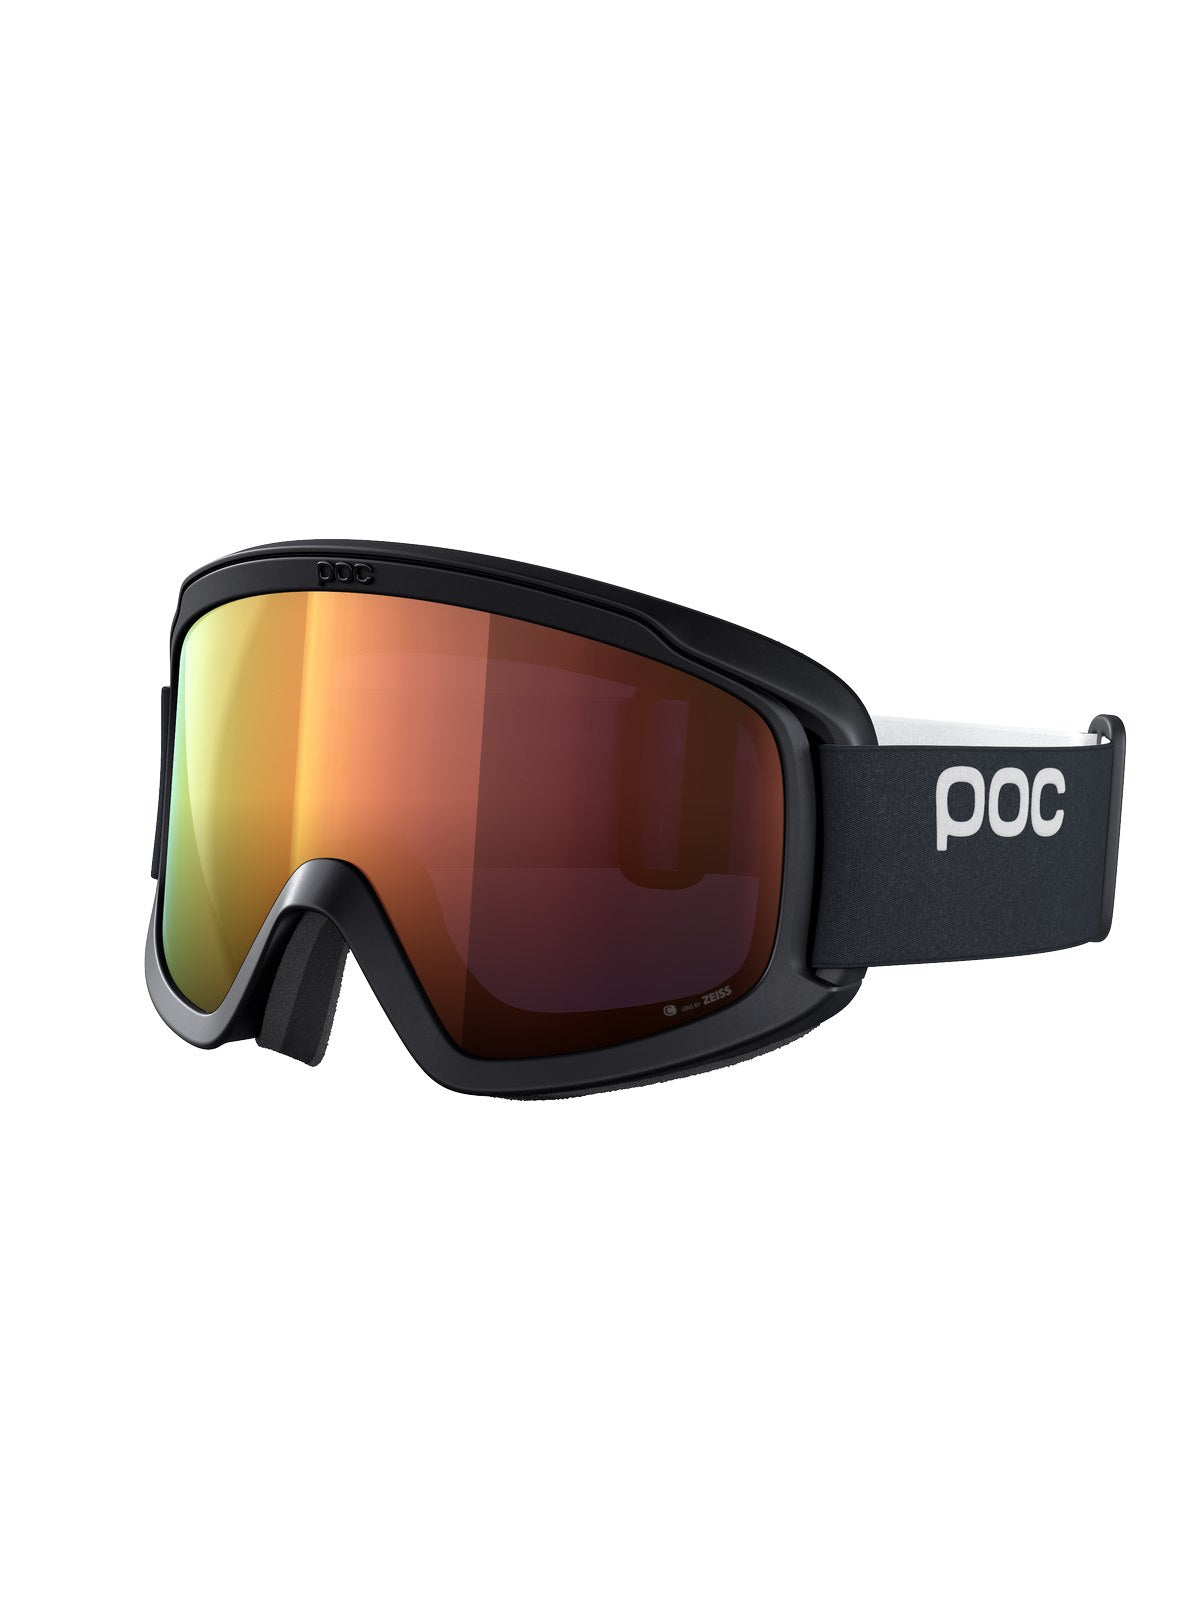 Gogle narciarskie POC Opsin - Ur. Black|Pt. Sunny Orange Cat 2